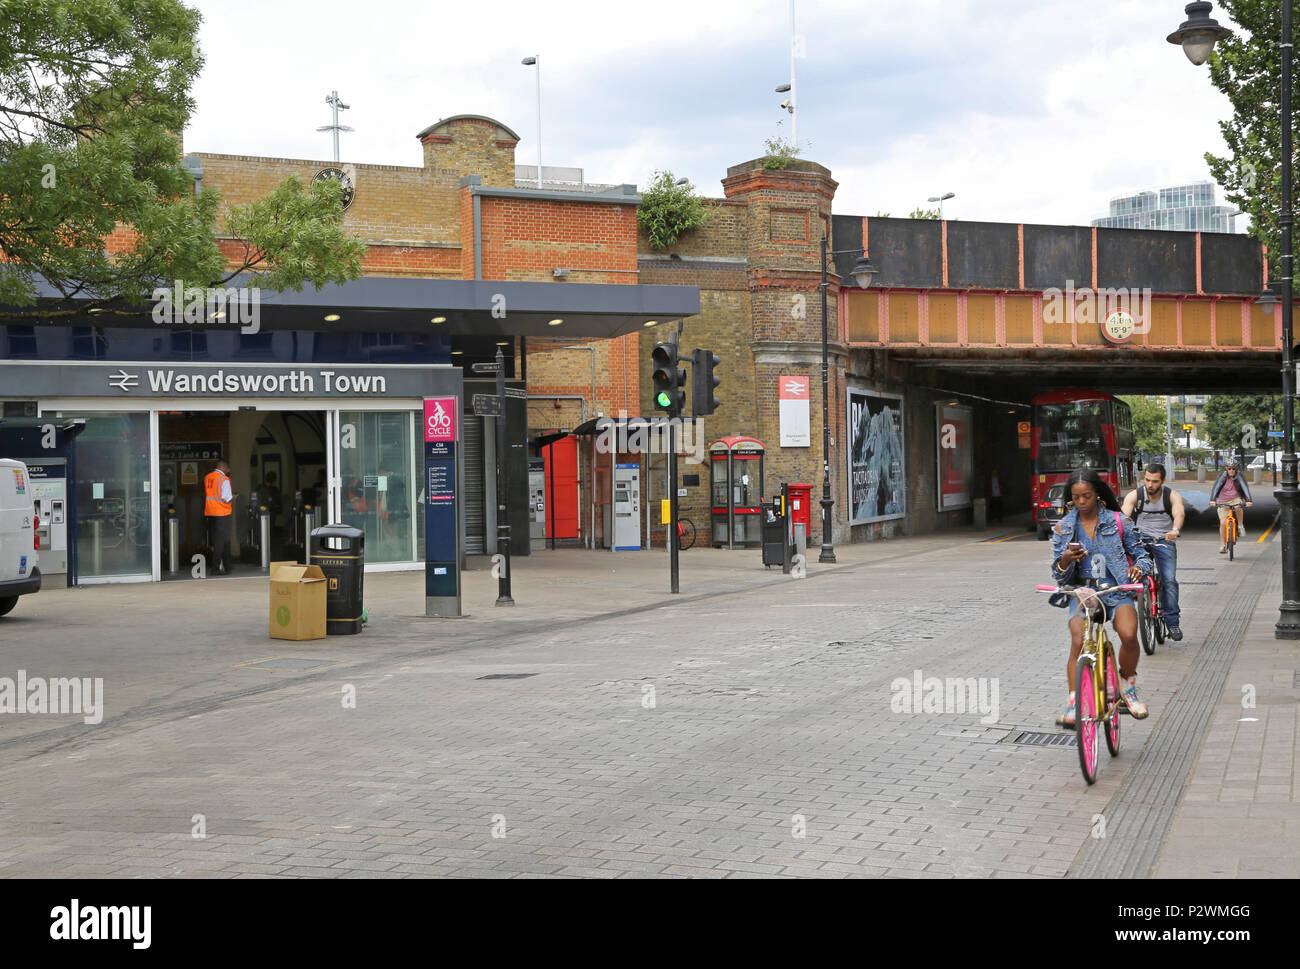 Einkaufen in der Straße vor dem Bahnhof Wandsworth Town, einem modischen Viertel im Südwesten von London, UK. Zeigt Radfahrer mit Handy während der Fahrt Stockfoto